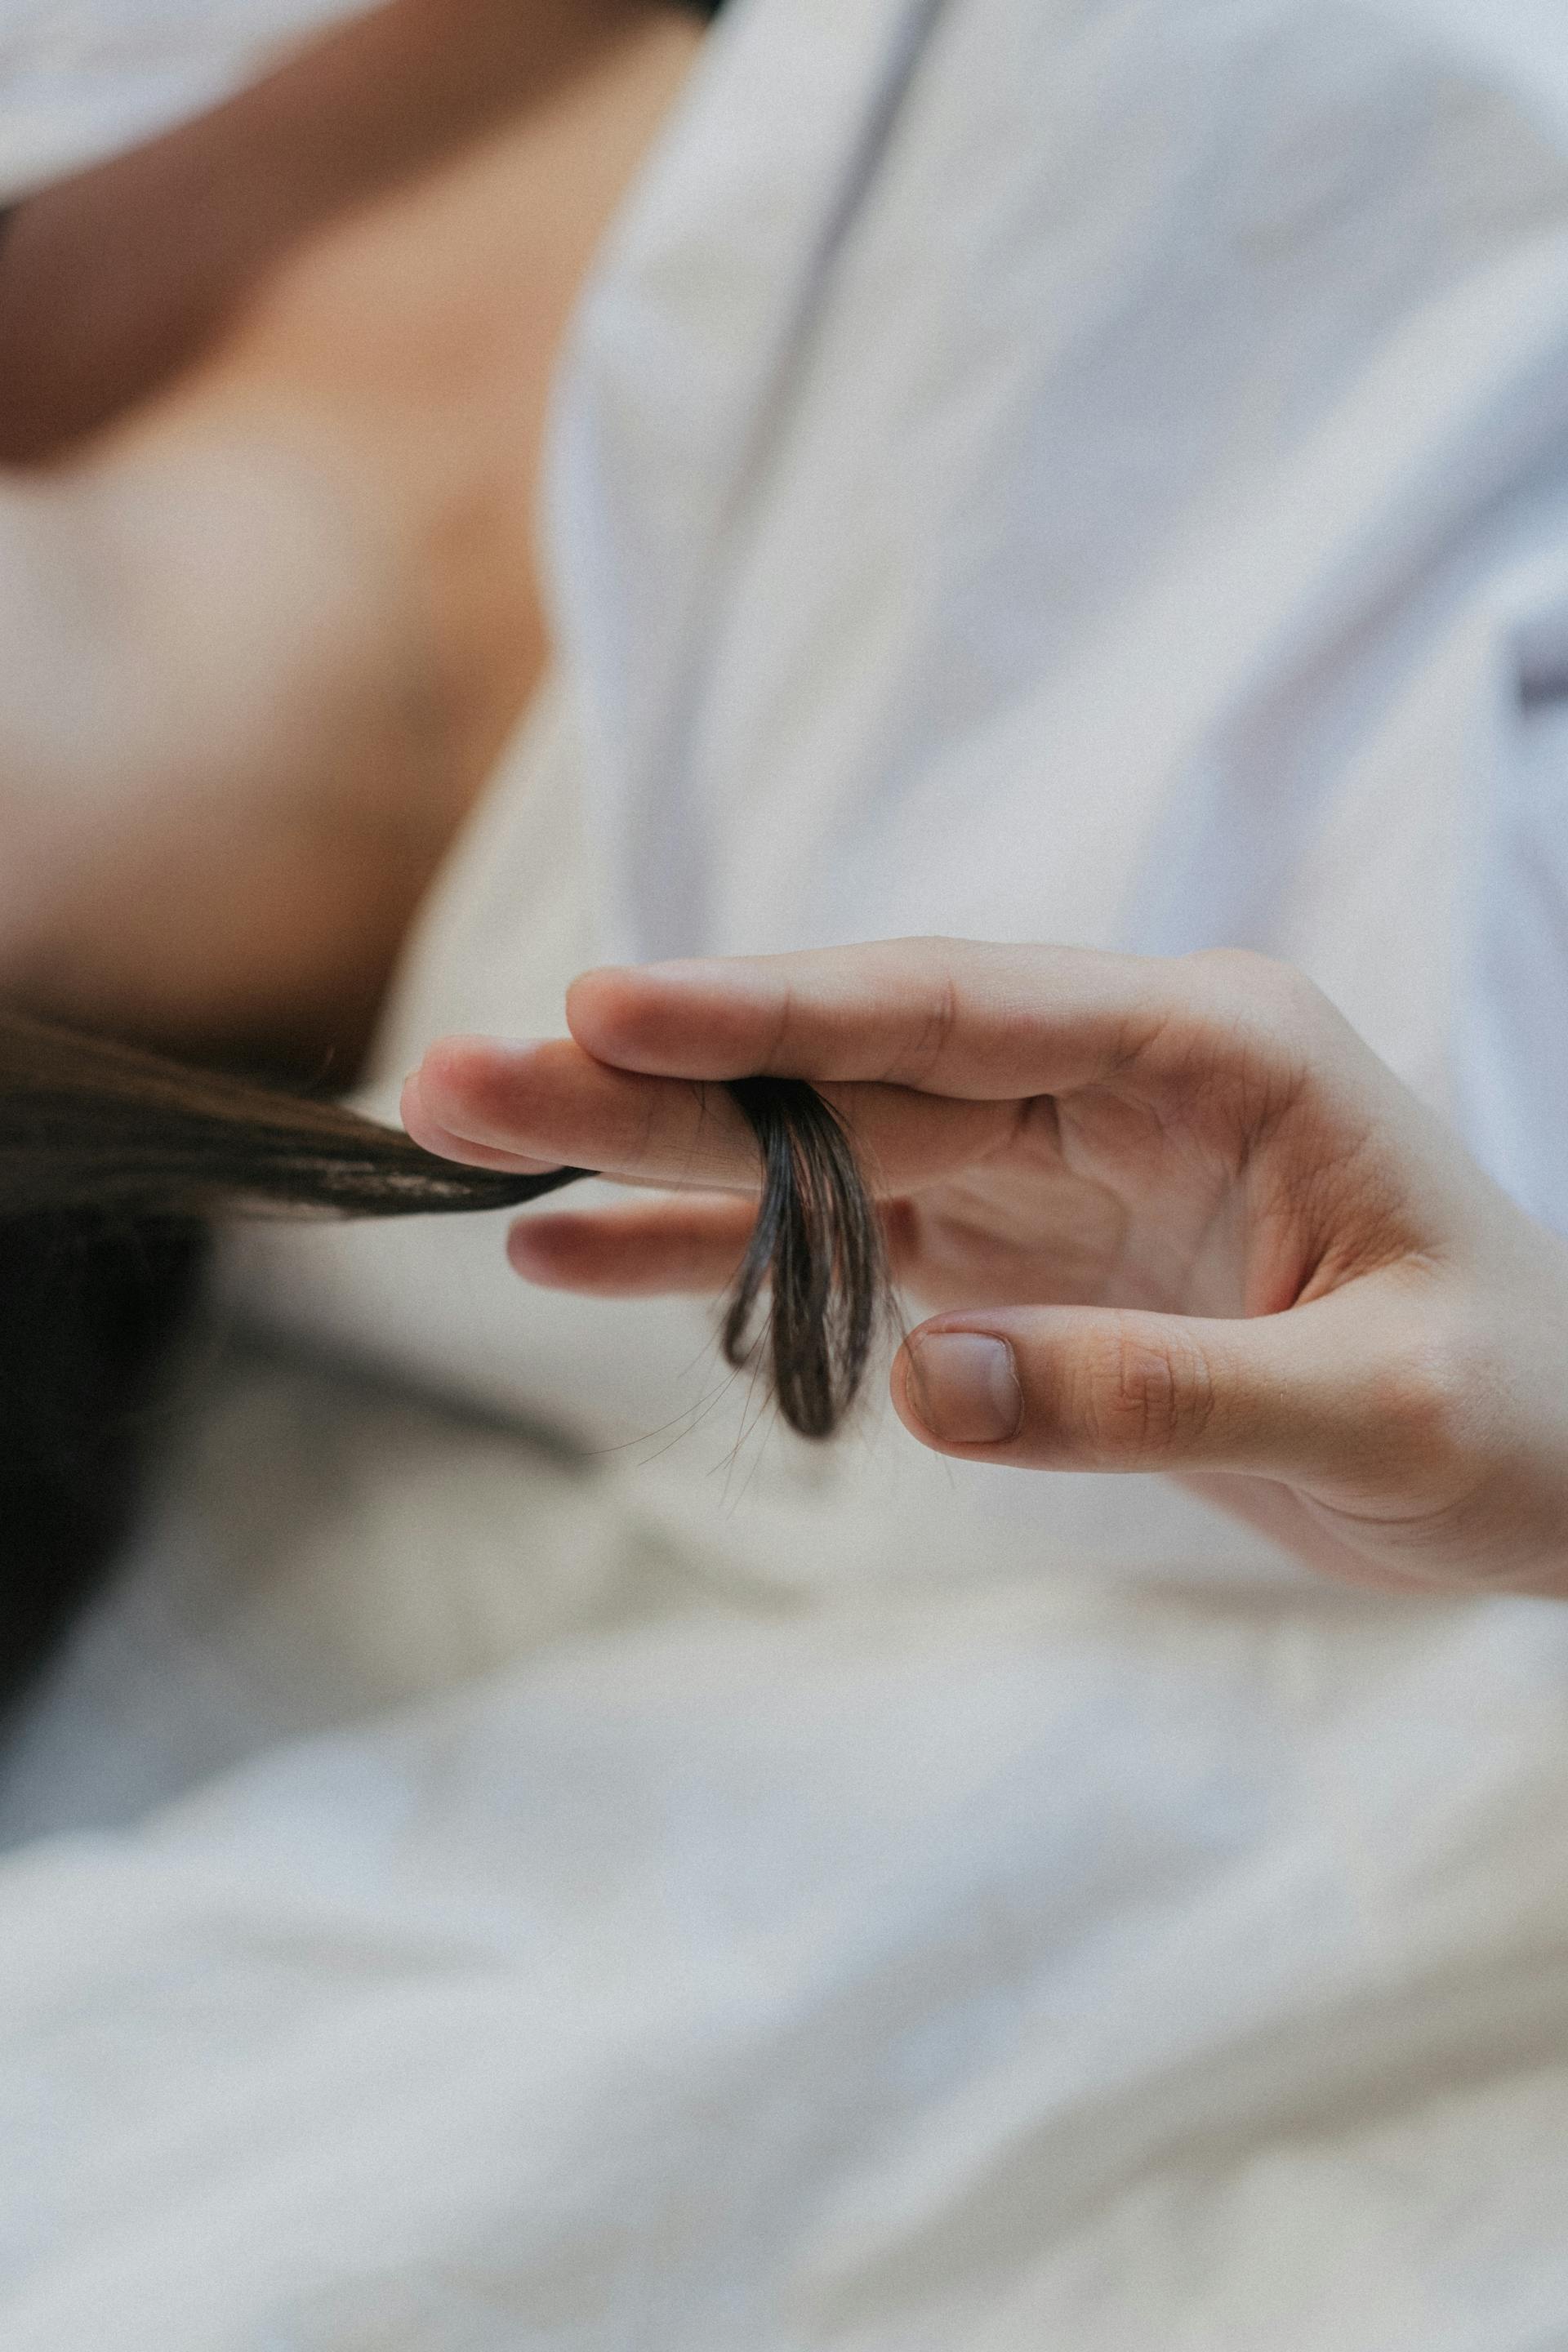 Eine Person zwirbelt eine Haarlocke | Quelle: Pexels